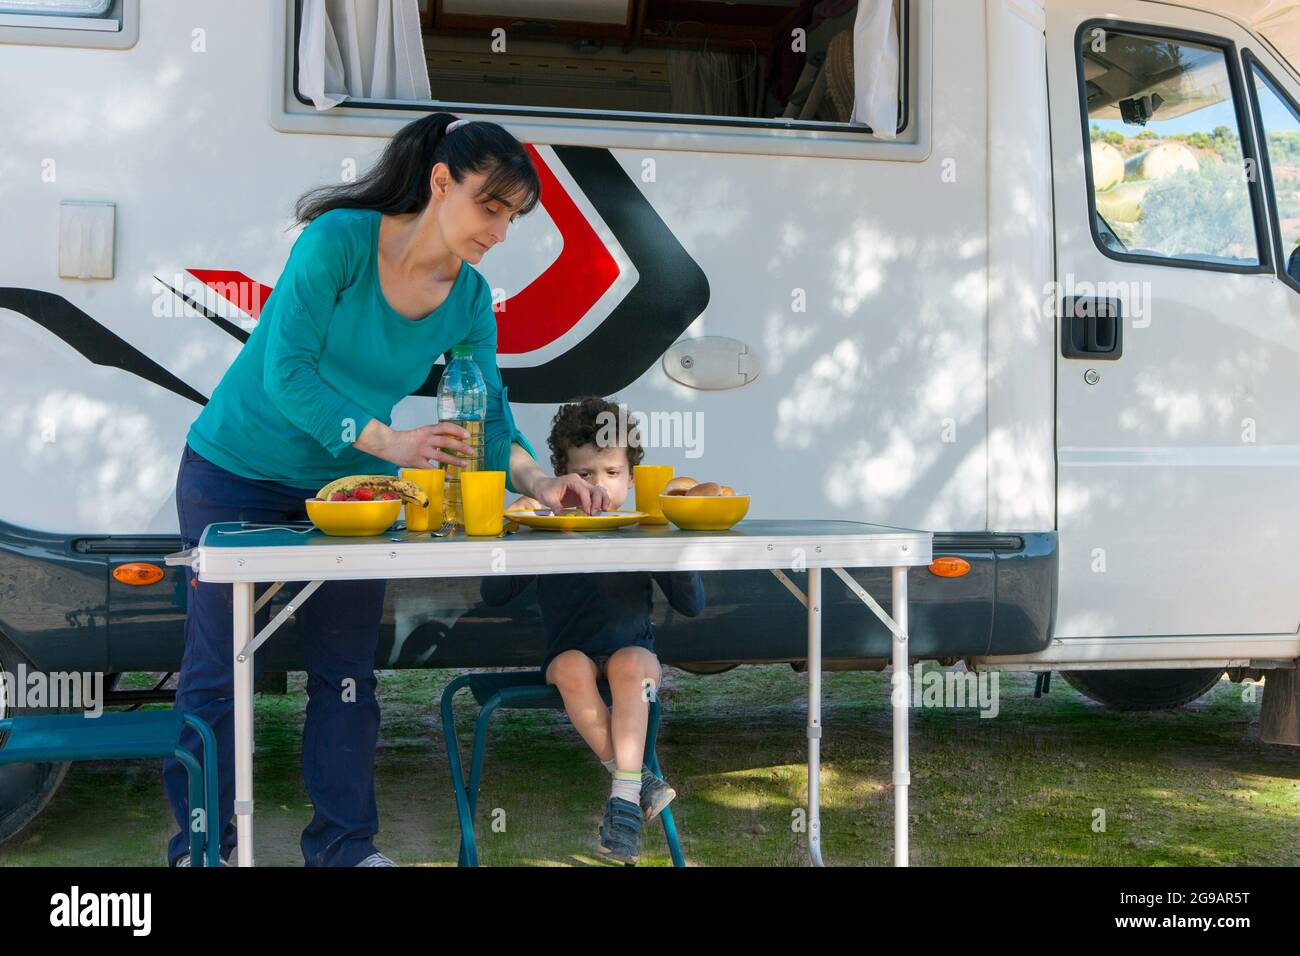 Kind sitzt am Tisch neben dem Wohnmobil, während seine Mutter an einem Campingtag Snacks und Getränke serviert. Stockfoto